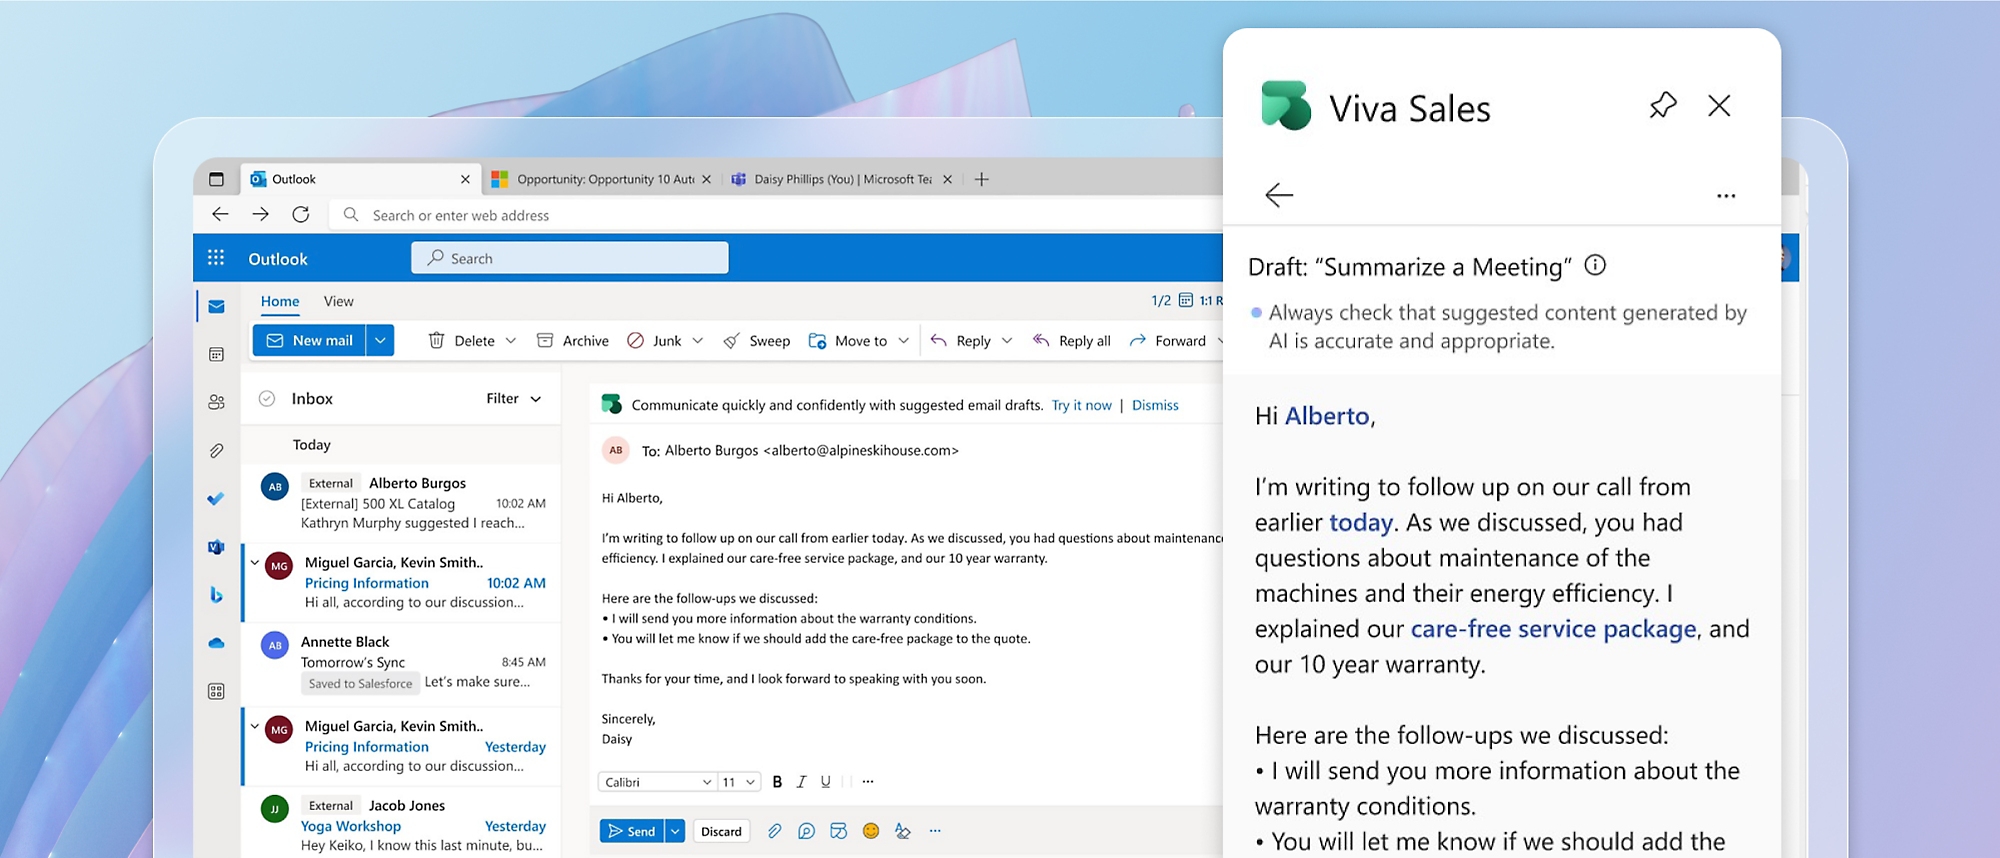 Microsoft Outlook е отворен и има отворен прозорец за Viva Sales